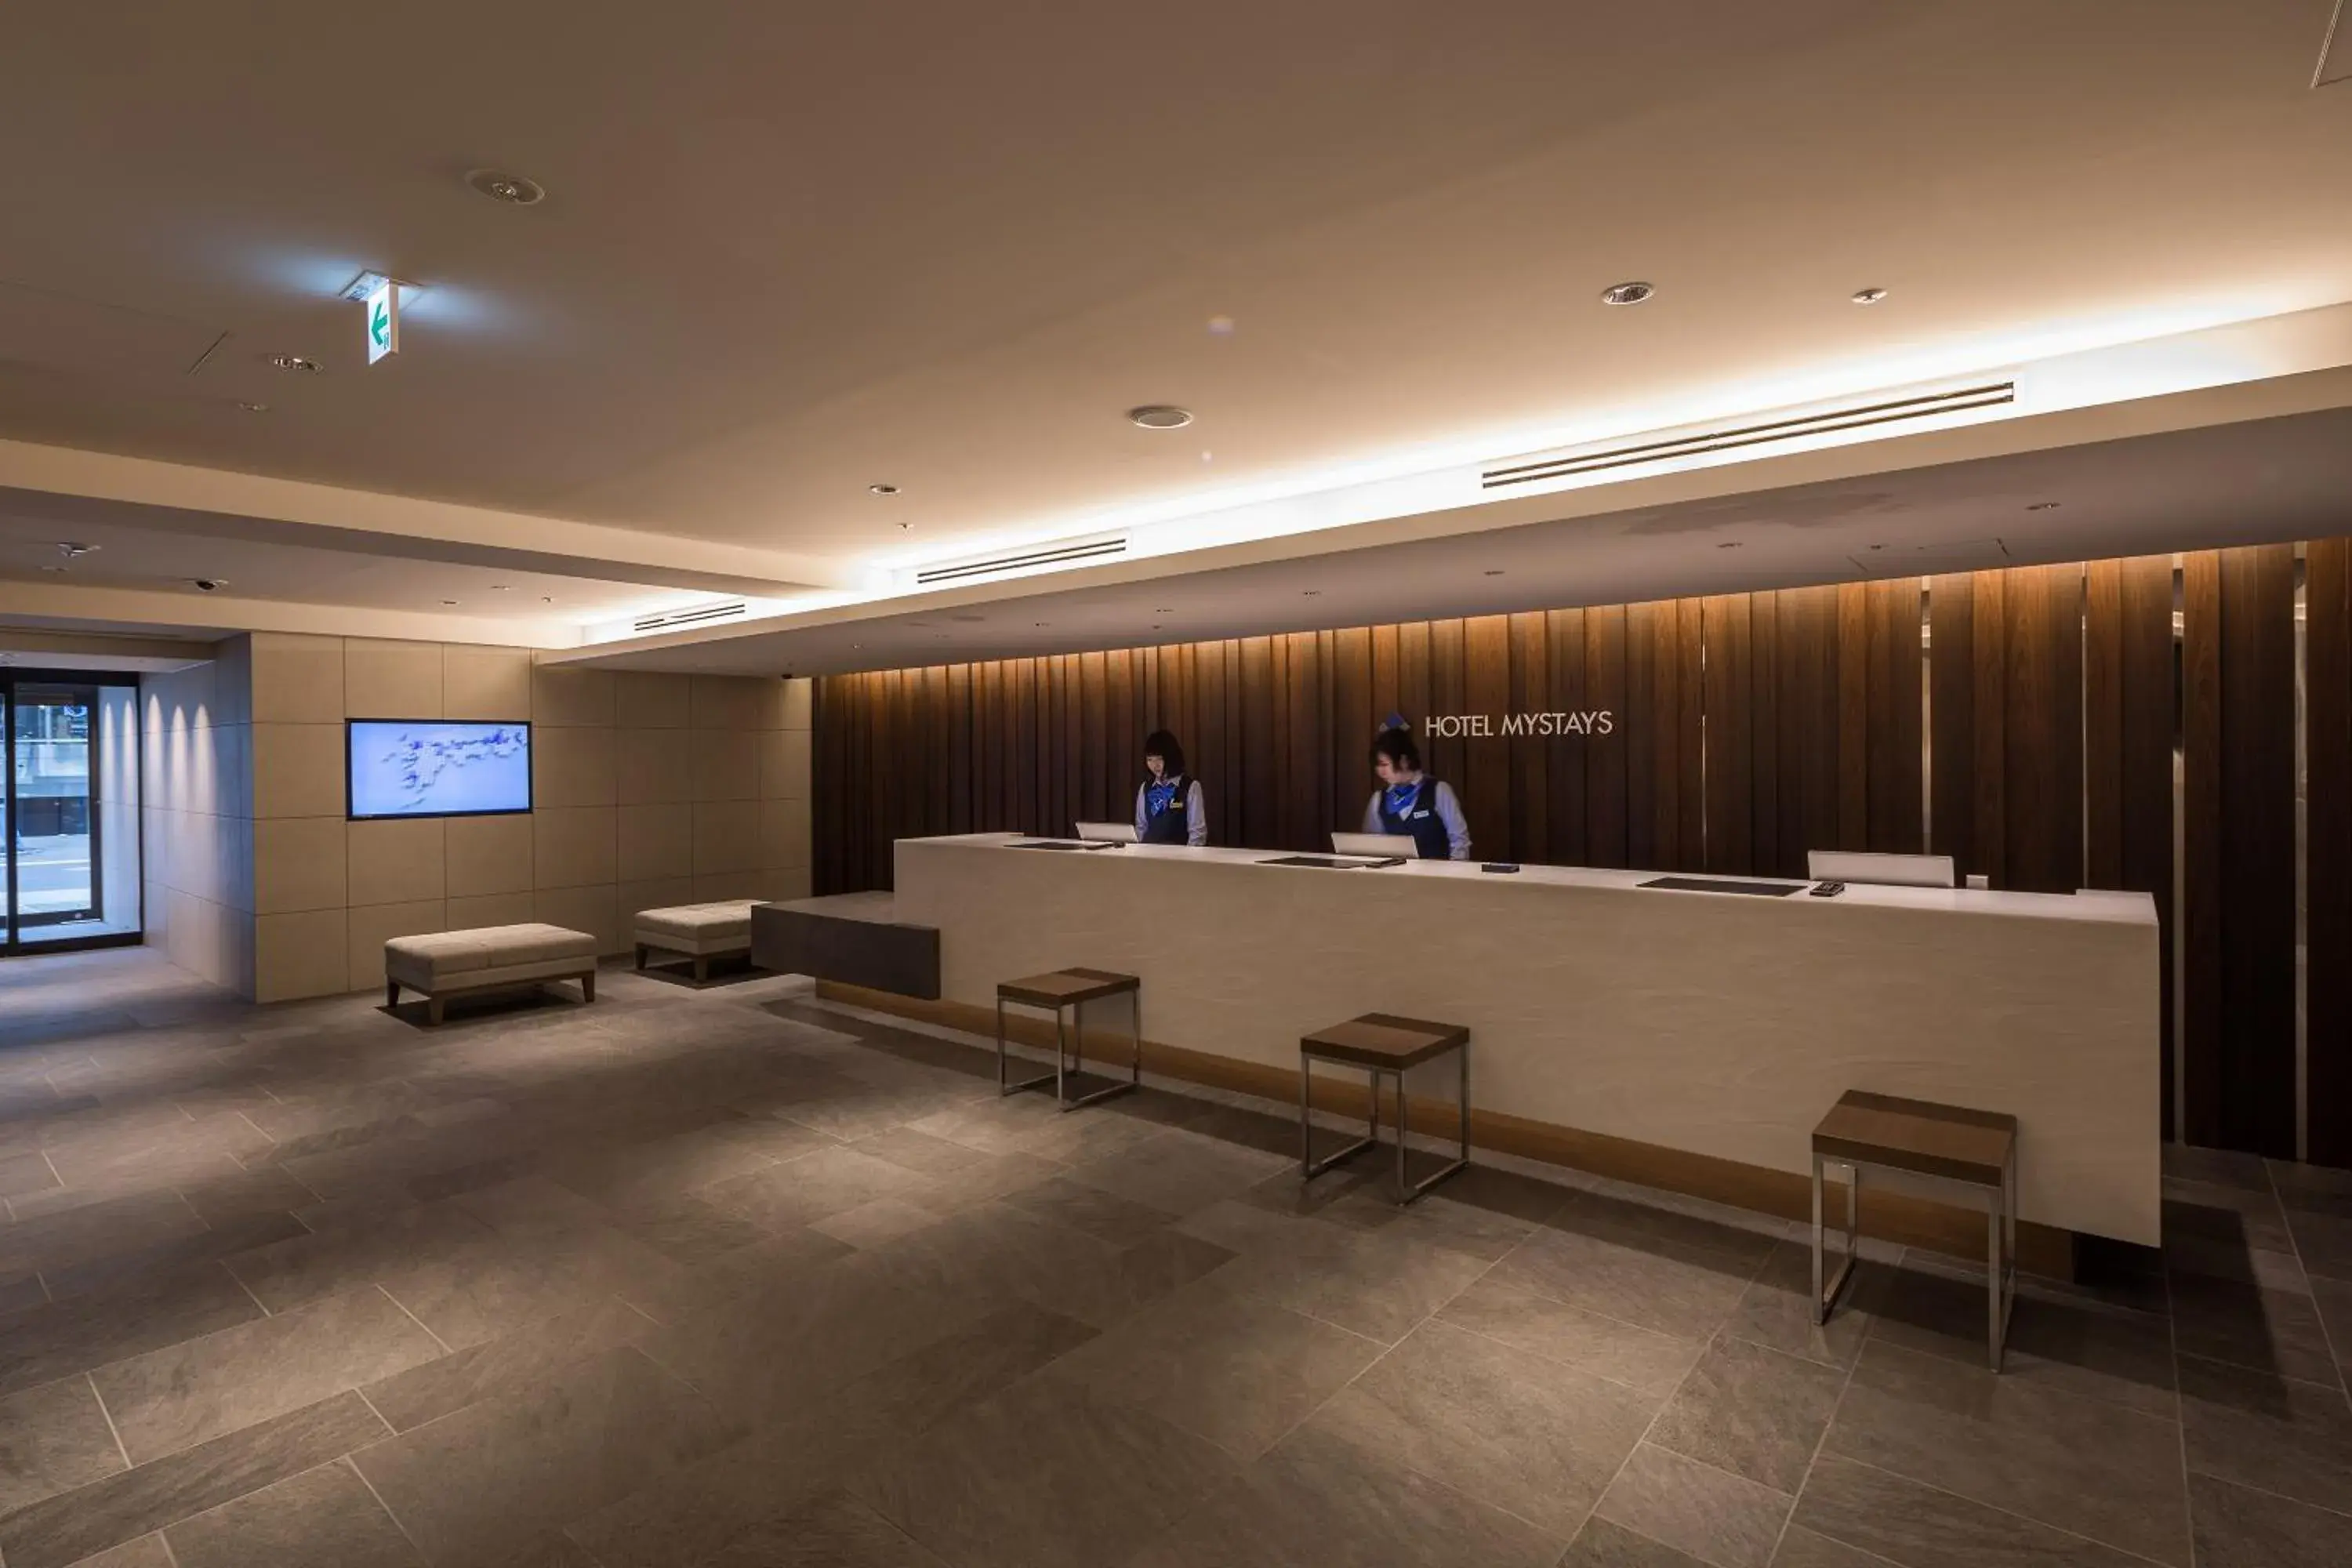 Lounge or bar, Lobby/Reception in Hotel Mystays Nagoya Nishiki